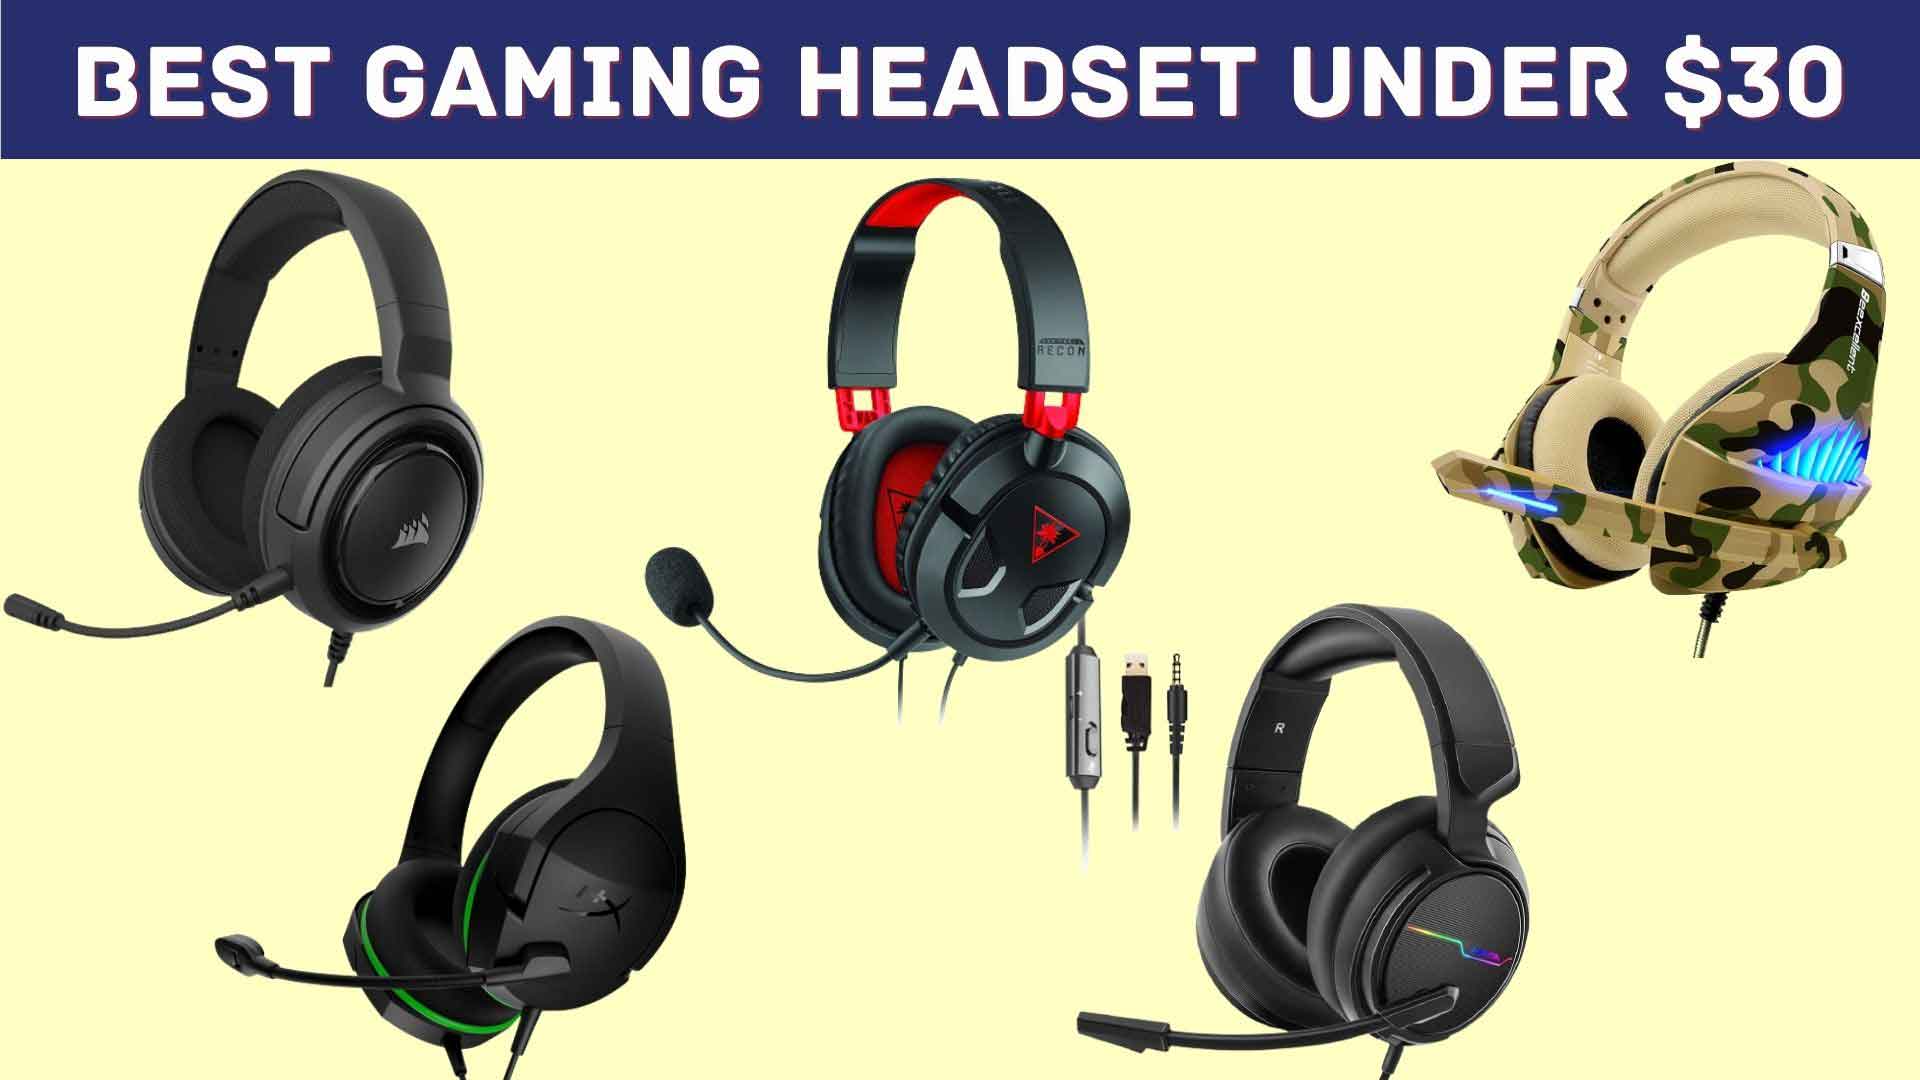 Best Gaming Headset under $30